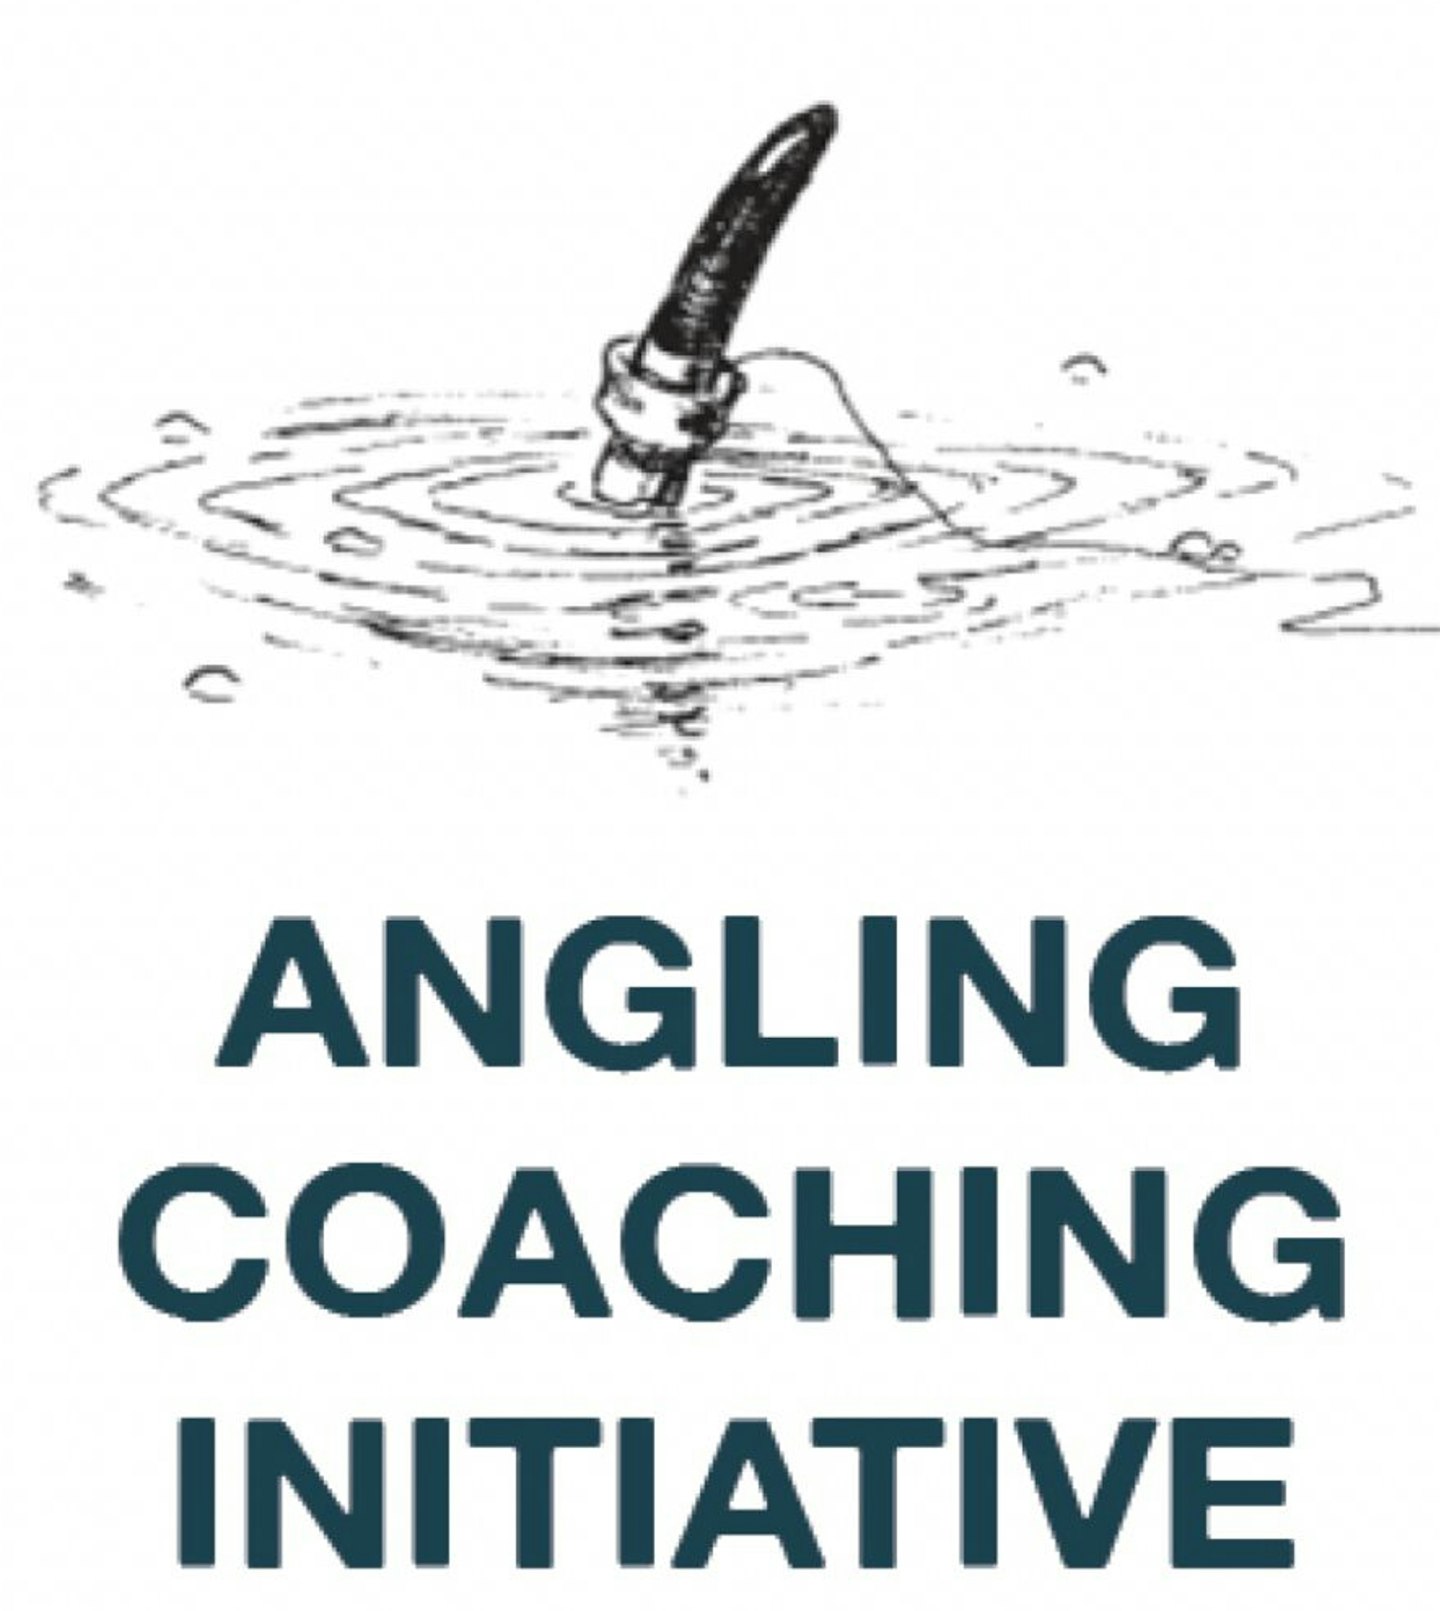 The Angling Coaching Initiative